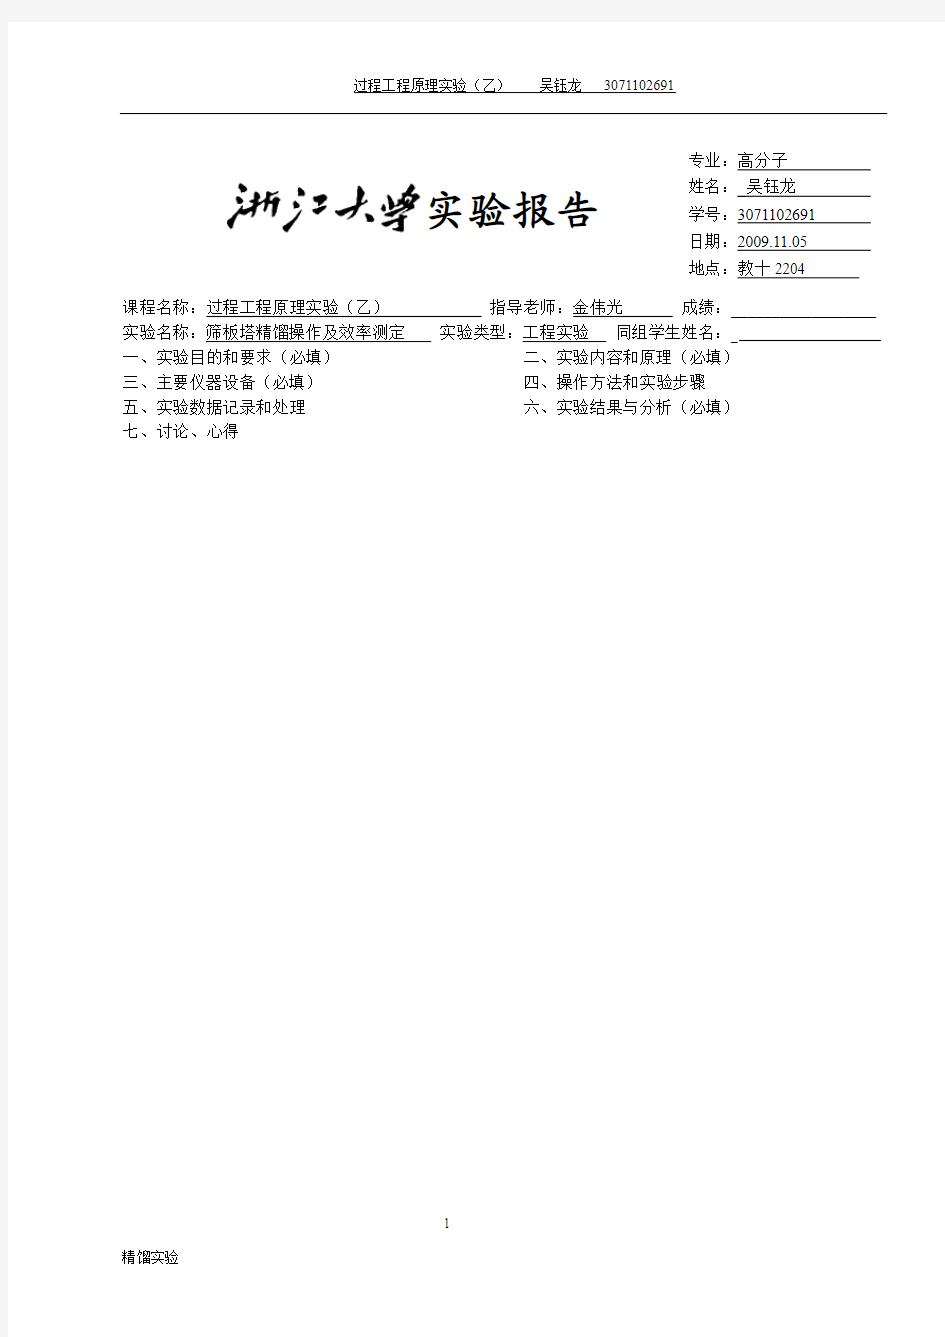 浙江大学化工原理(过程工程与控制乙)实验报告 模板